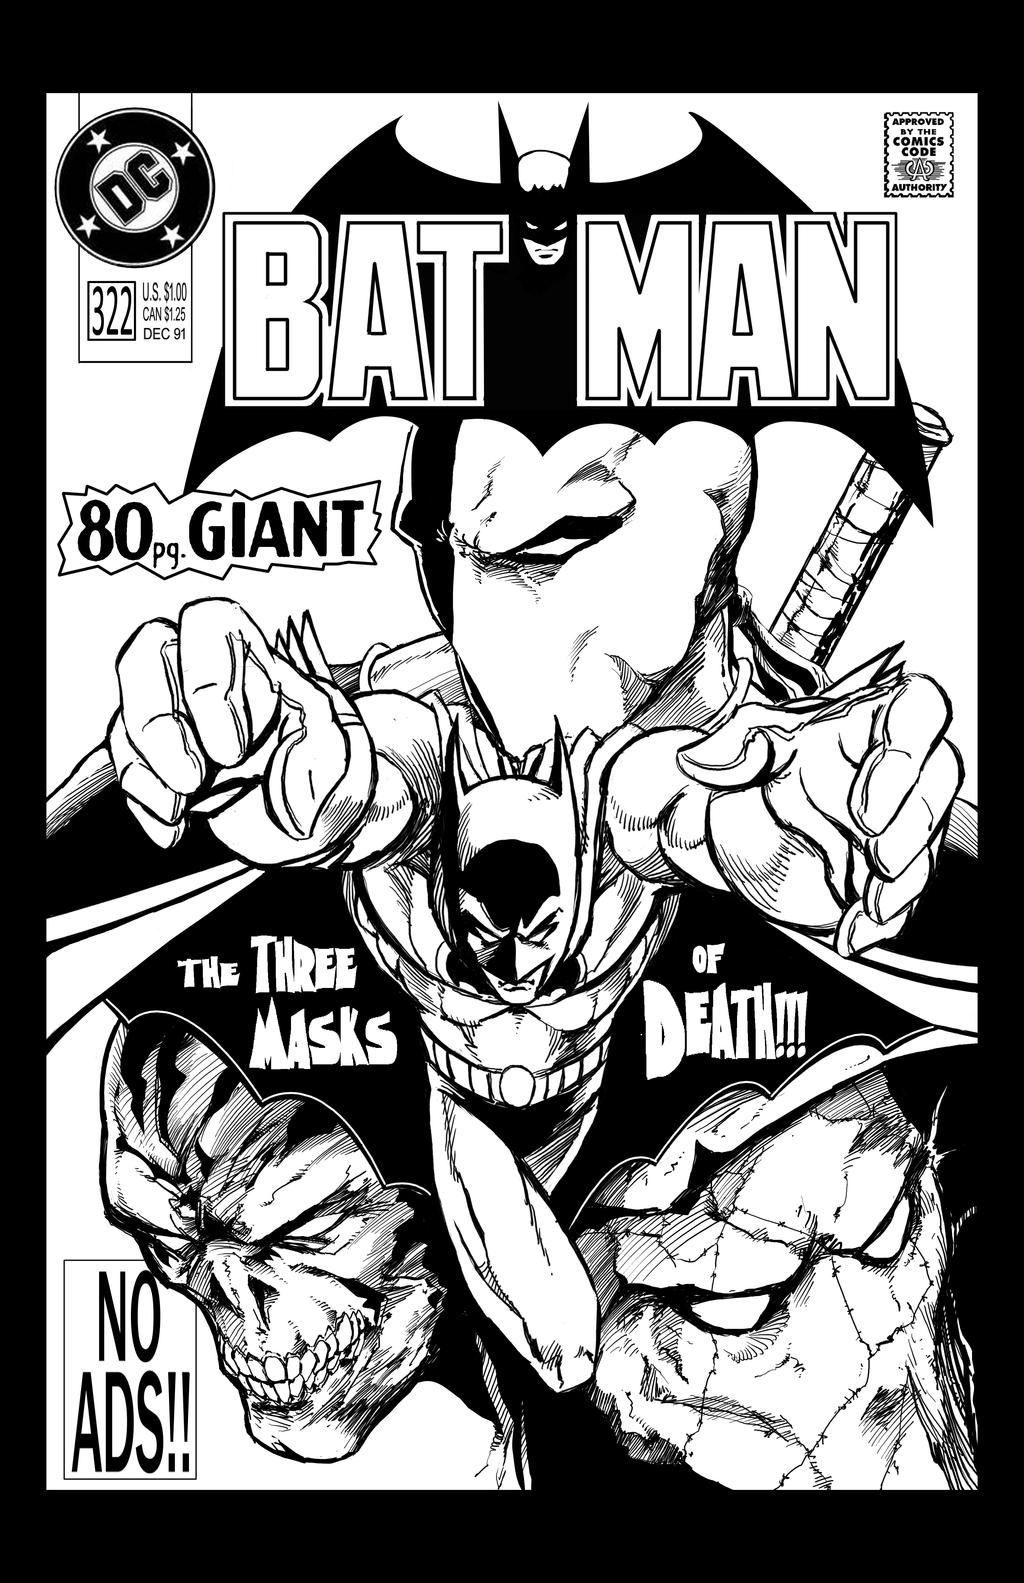 Batman 80pg Giant mock cover